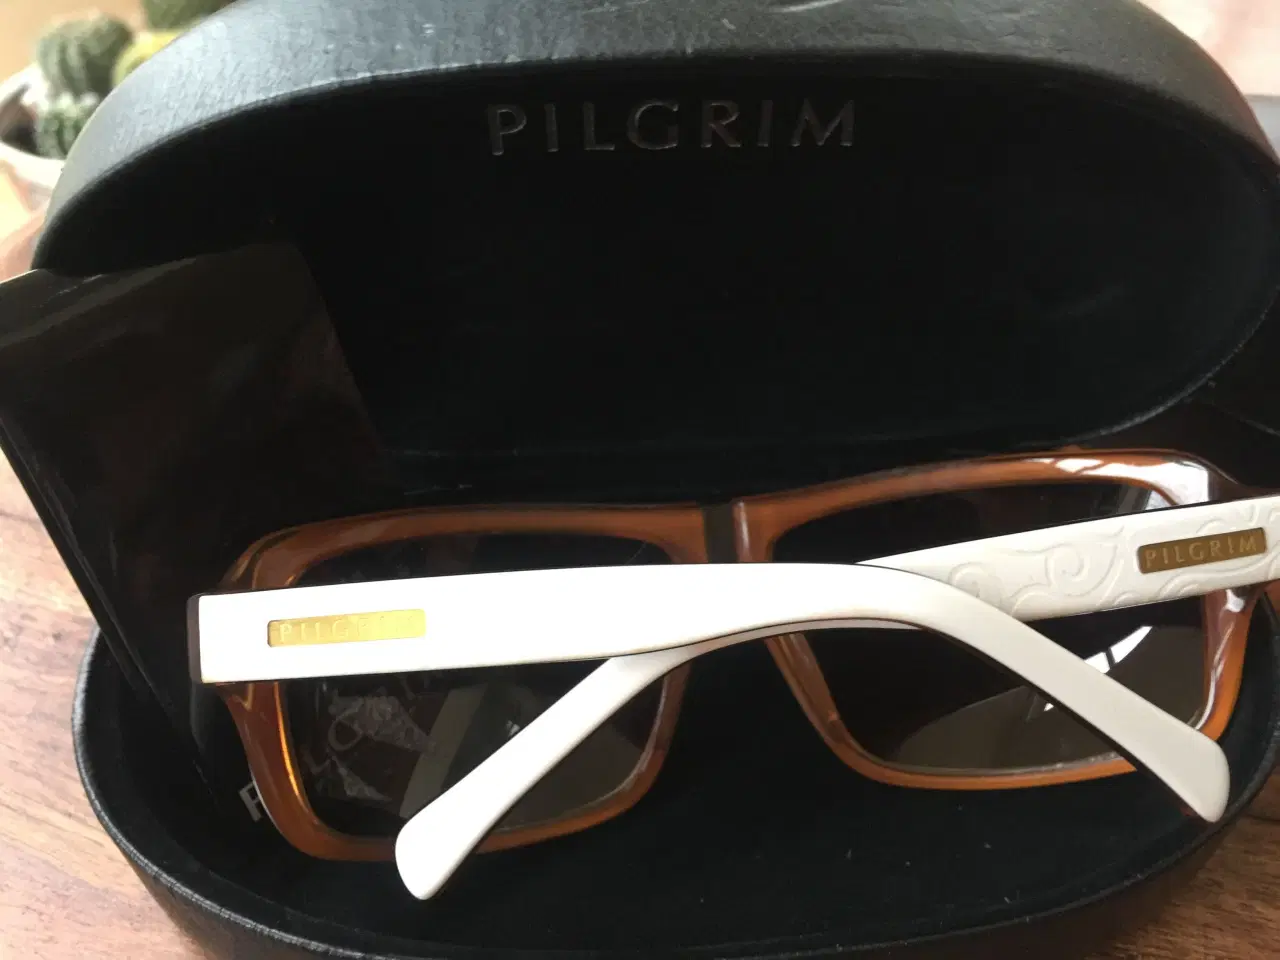 Billede 3 - Pilgrim solbriller